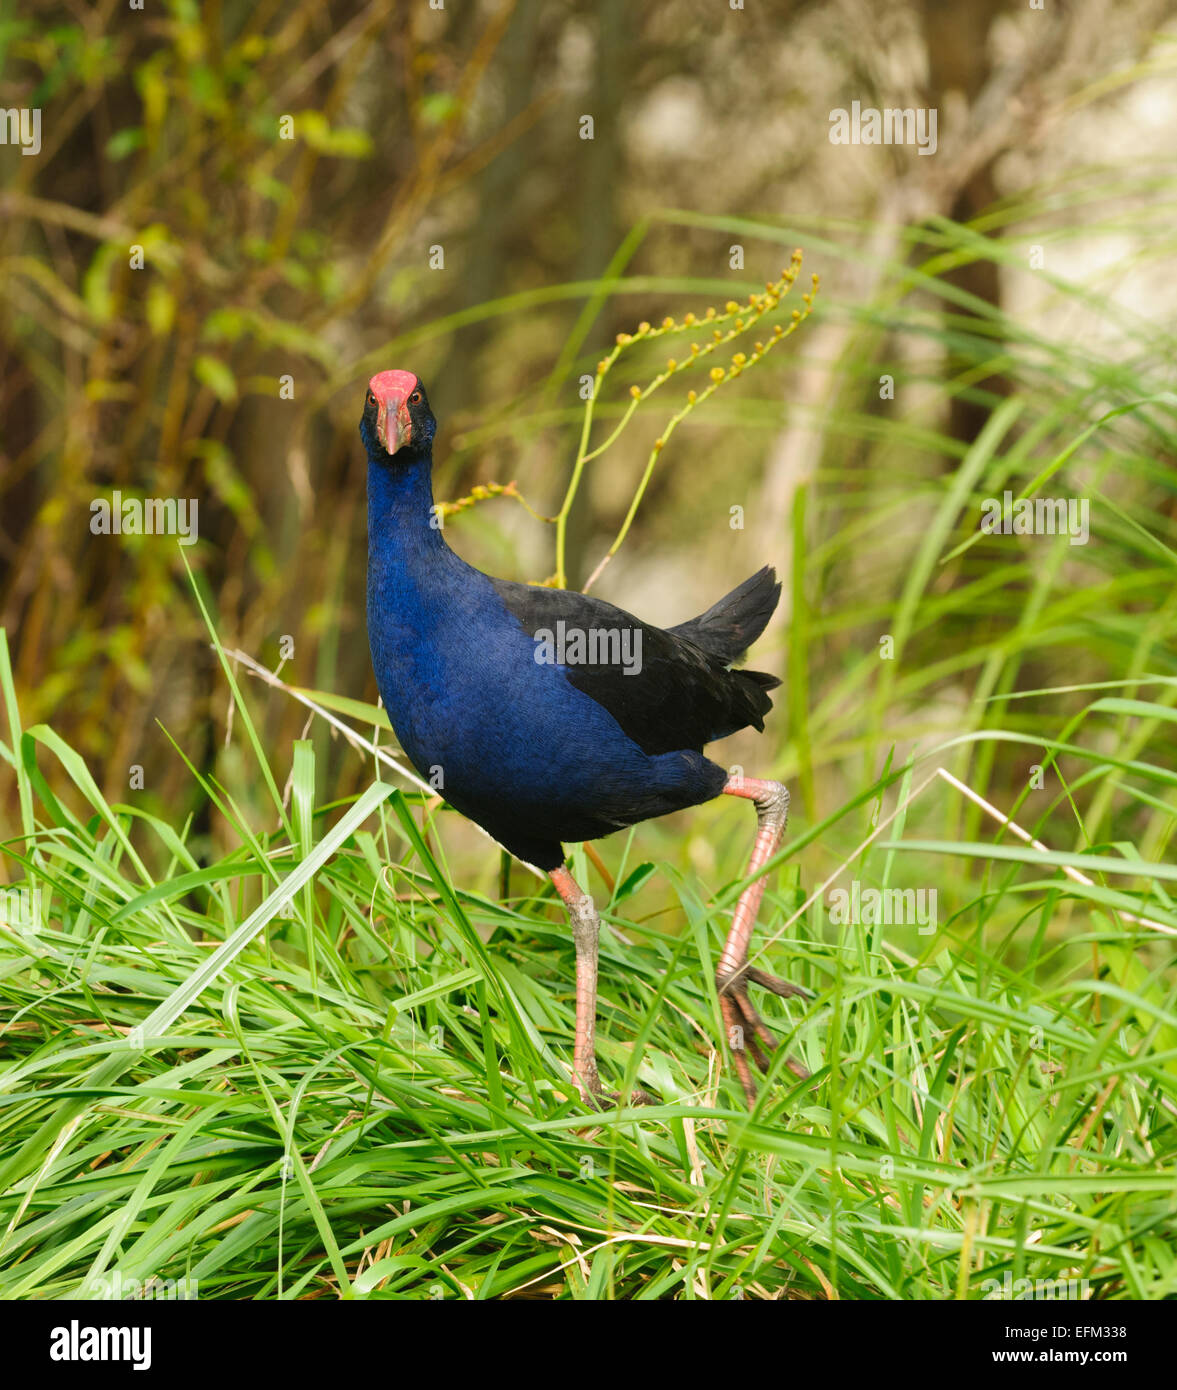 New Zealand pukeko, un oiseau dans la nature Banque D'Images